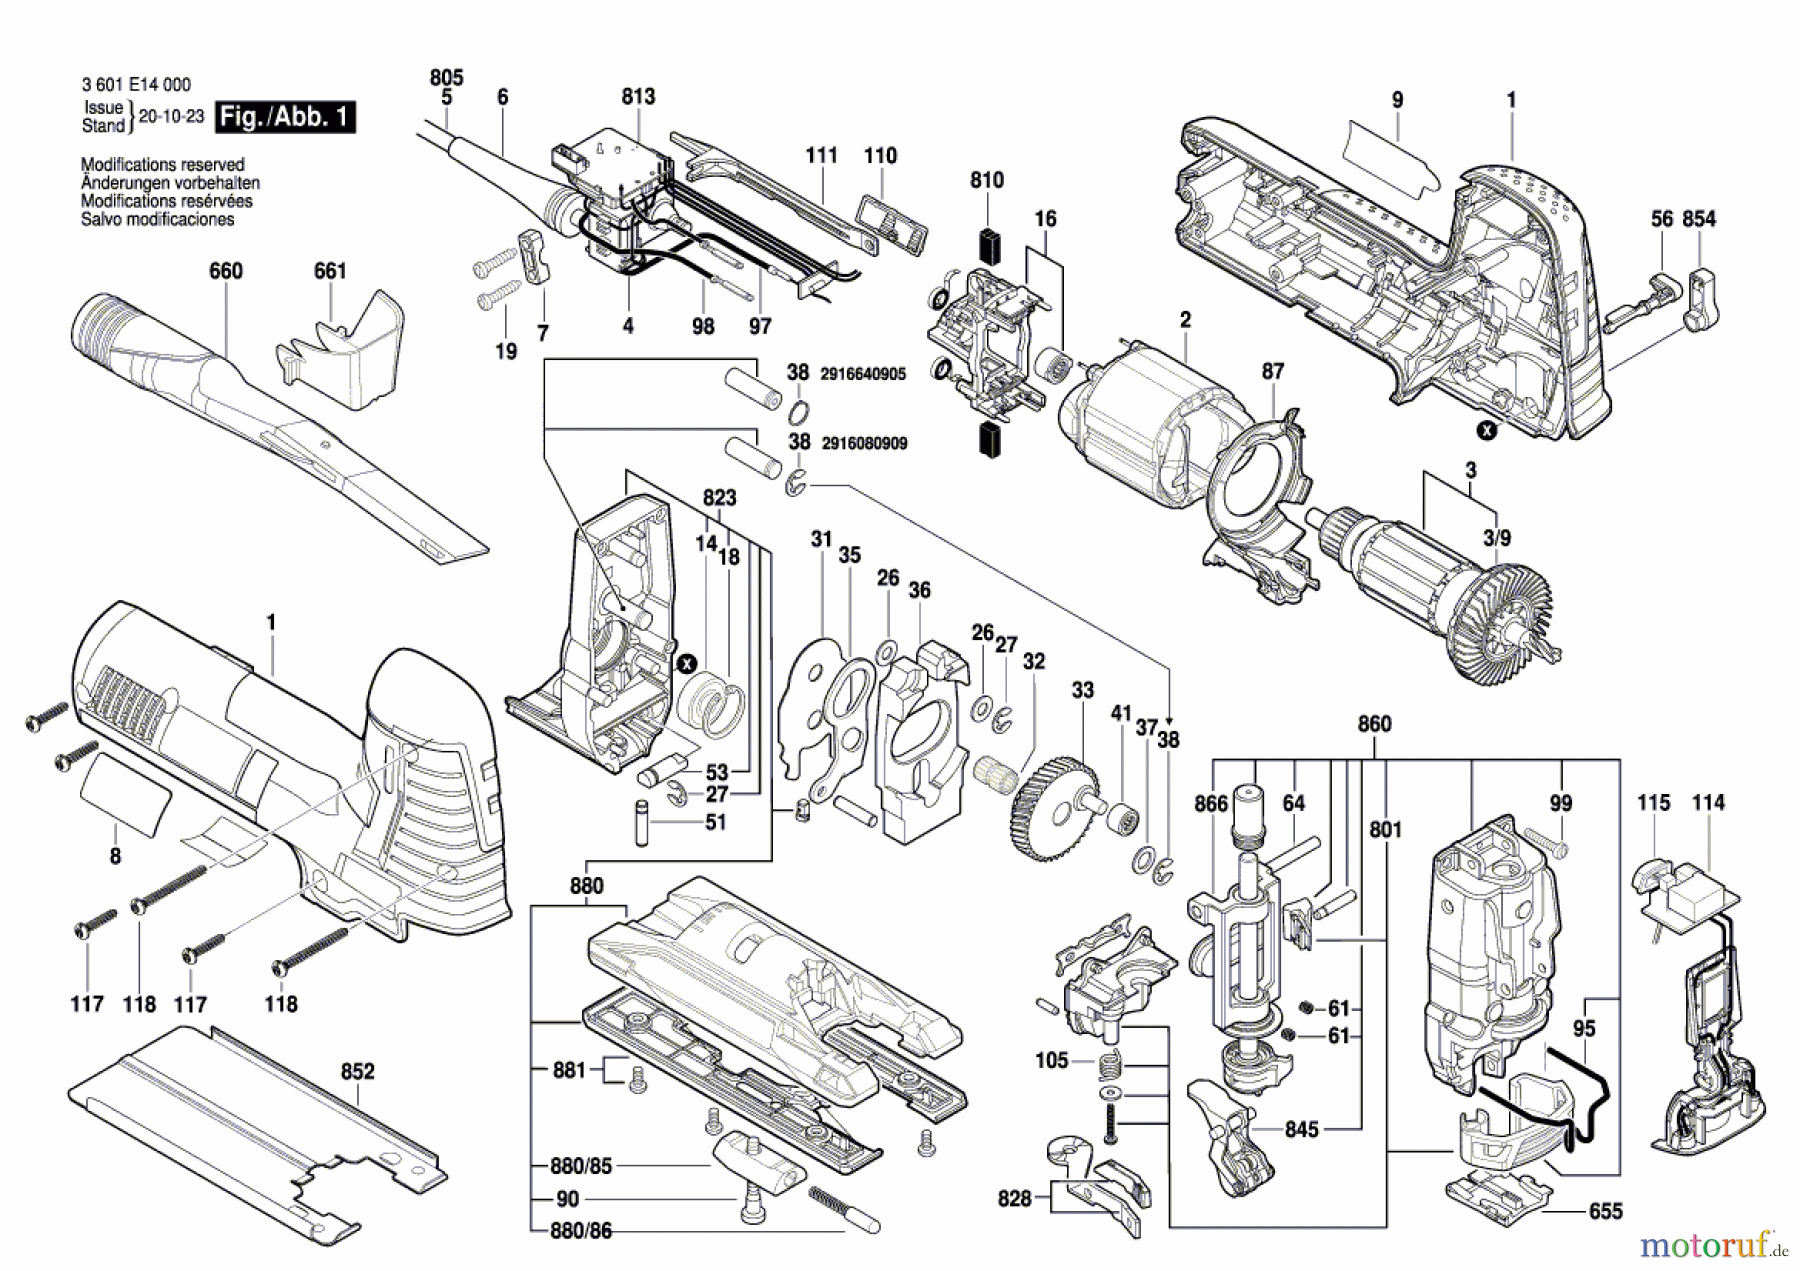  Bosch Werkzeug Stichsäge GST 140 CE Seite 1